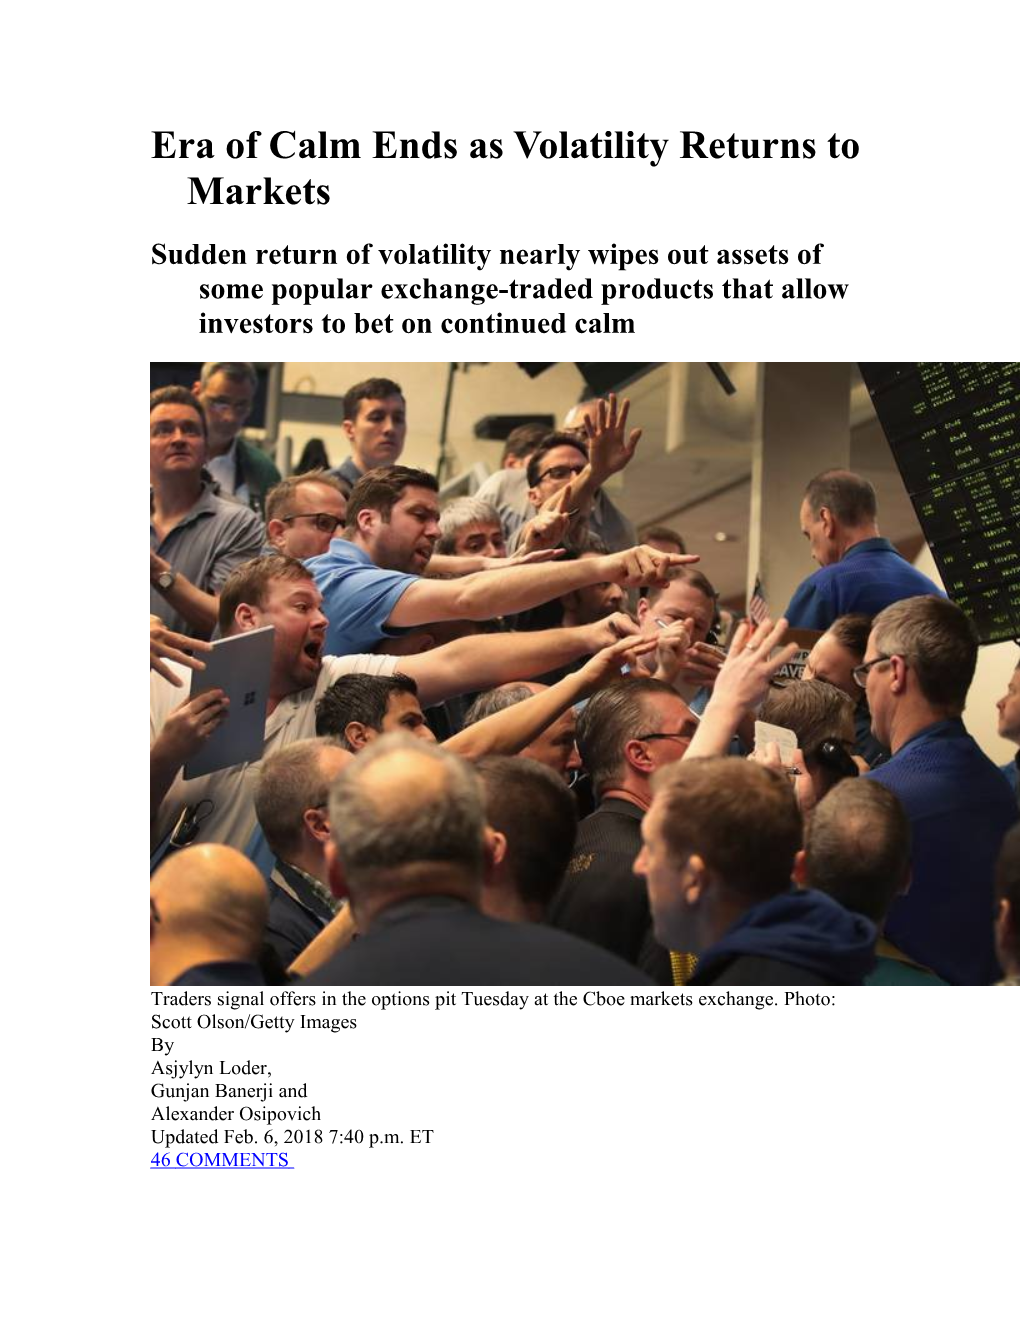 Era of Calm Ends As Volatility Returns to Markets